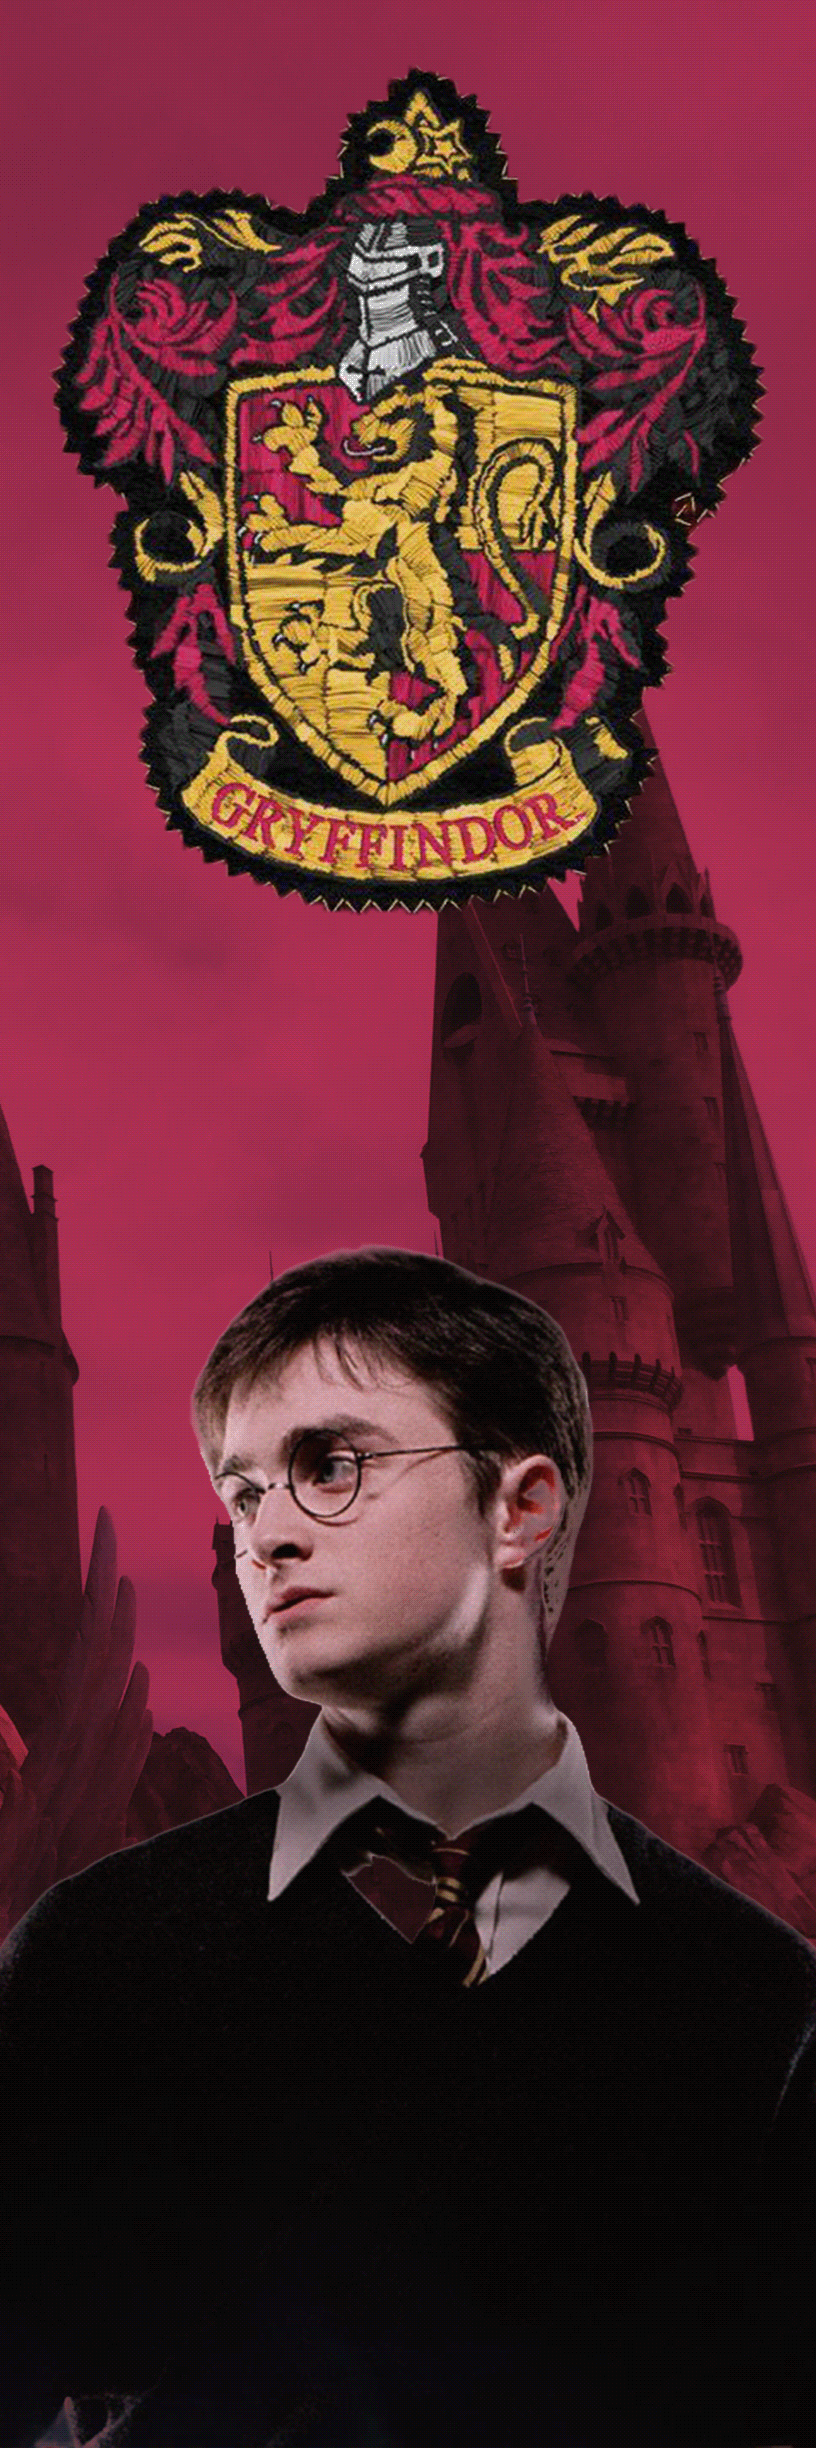 bookmarks Gryffindor harry potter Hermione Granger Hogwarts Hogwarts Houses Hufflepuff Ravenclaw Slytherin voldemort